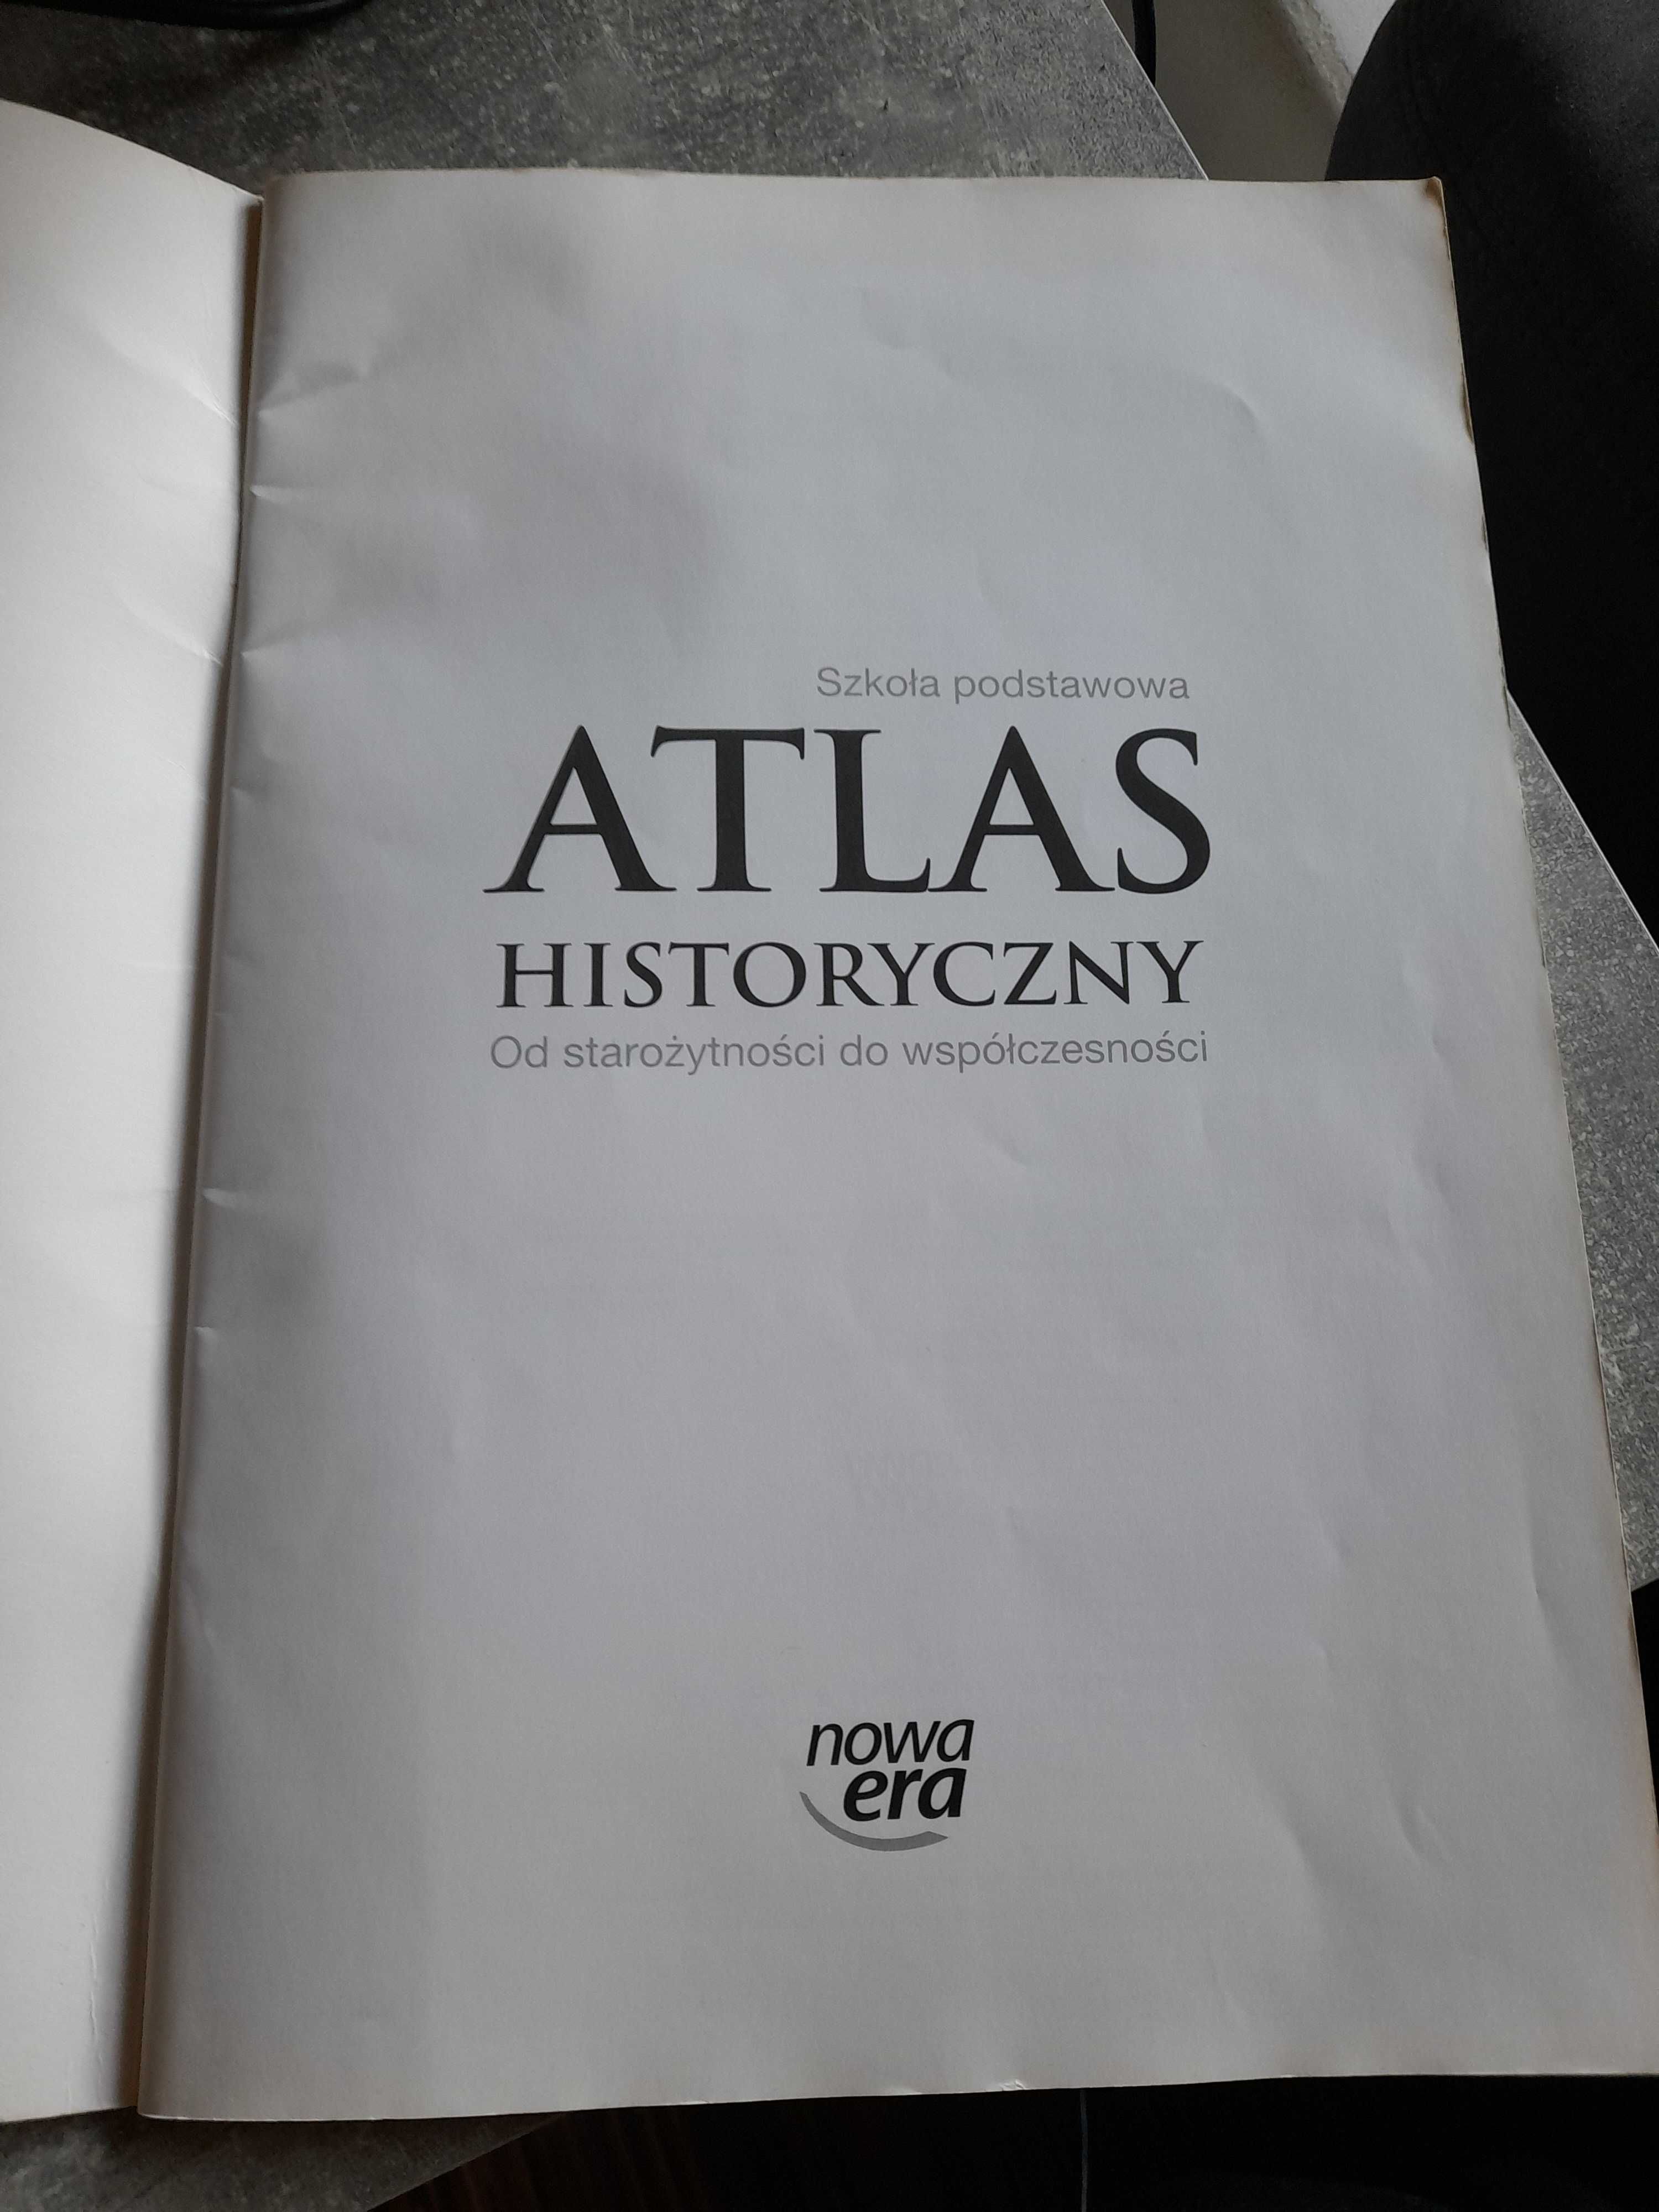 Atlas historyczny - od starożytności do współczesności. Nowa era